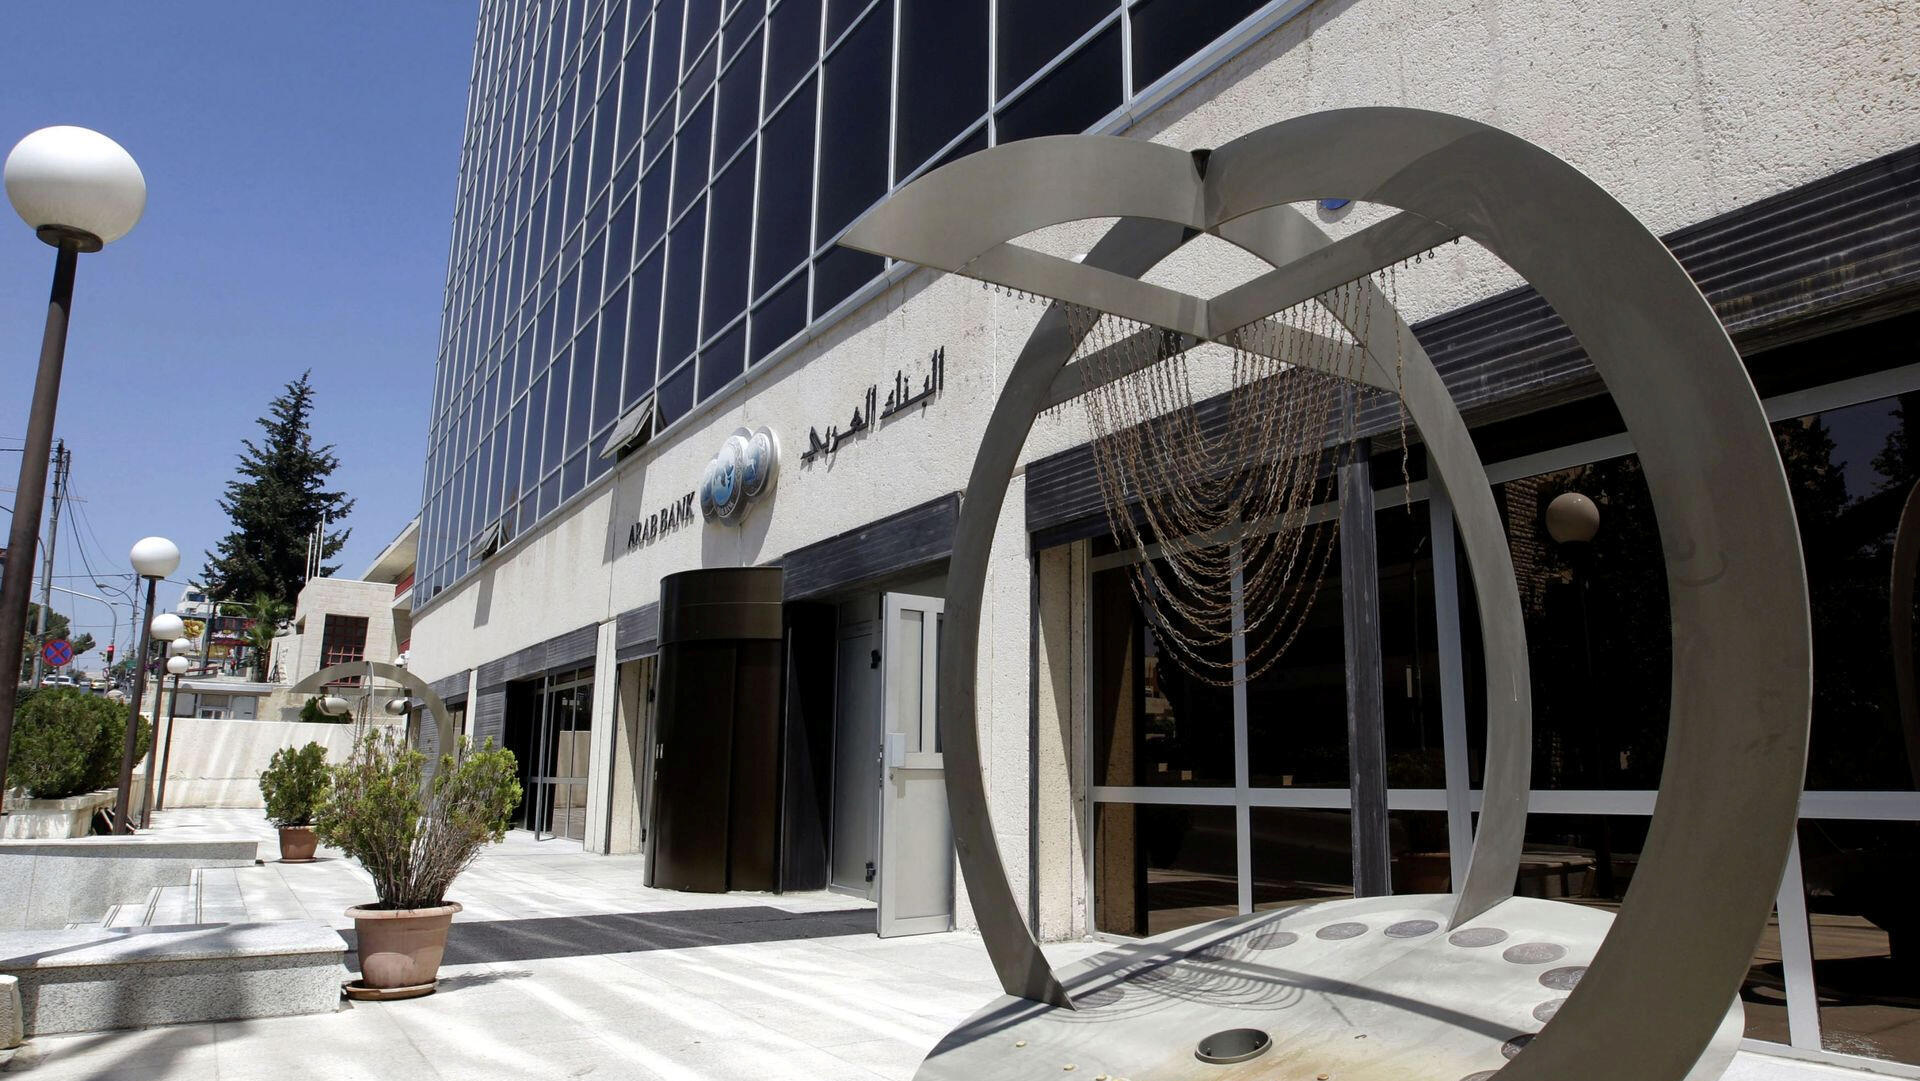 הבנק הערבי המאוגד בירדן